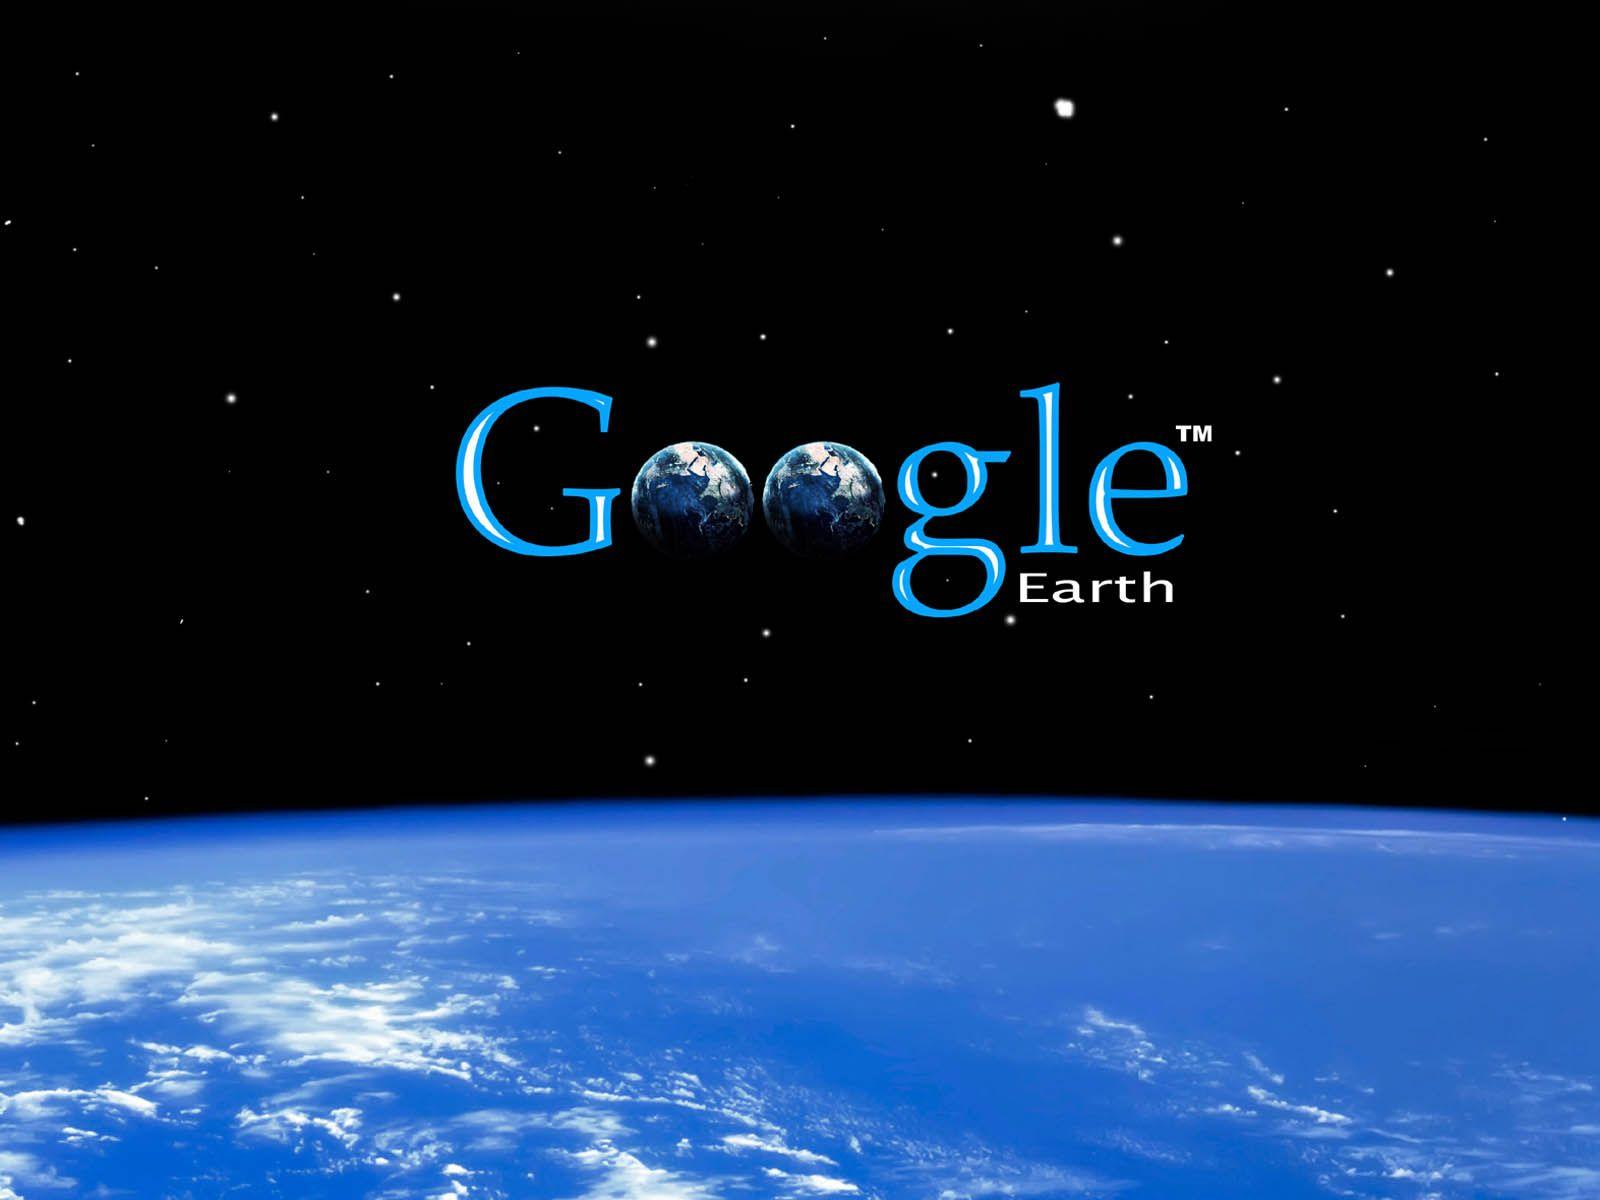 Google Background Image